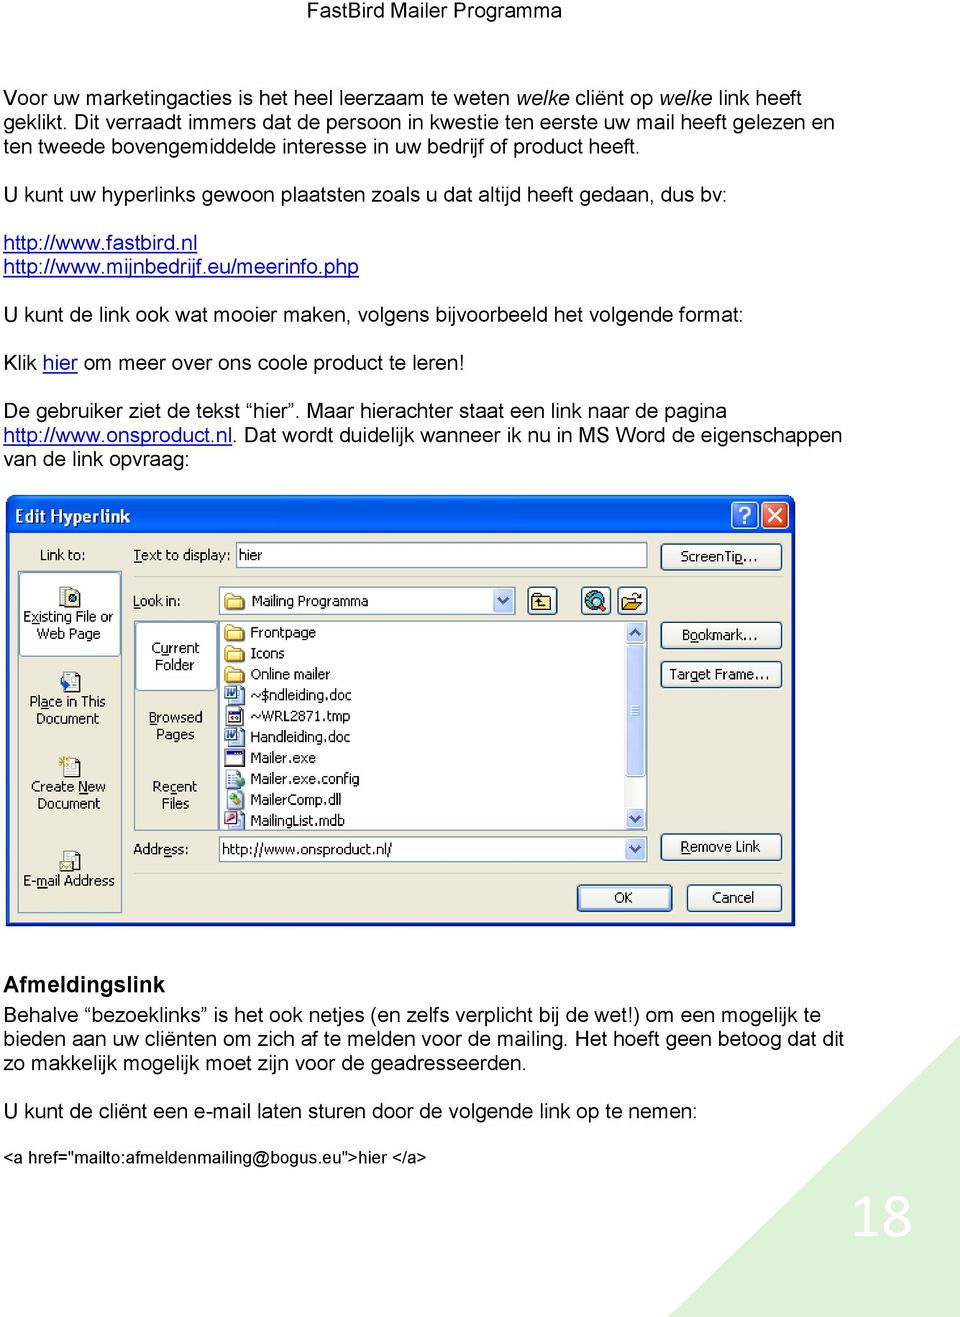 U kunt uw hyperlinks gewoon plaatsten zoals u dat altijd heeft gedaan, dus bv: http://www.fastbird.nl http://www.mijnbedrijf.eu/meerinfo.